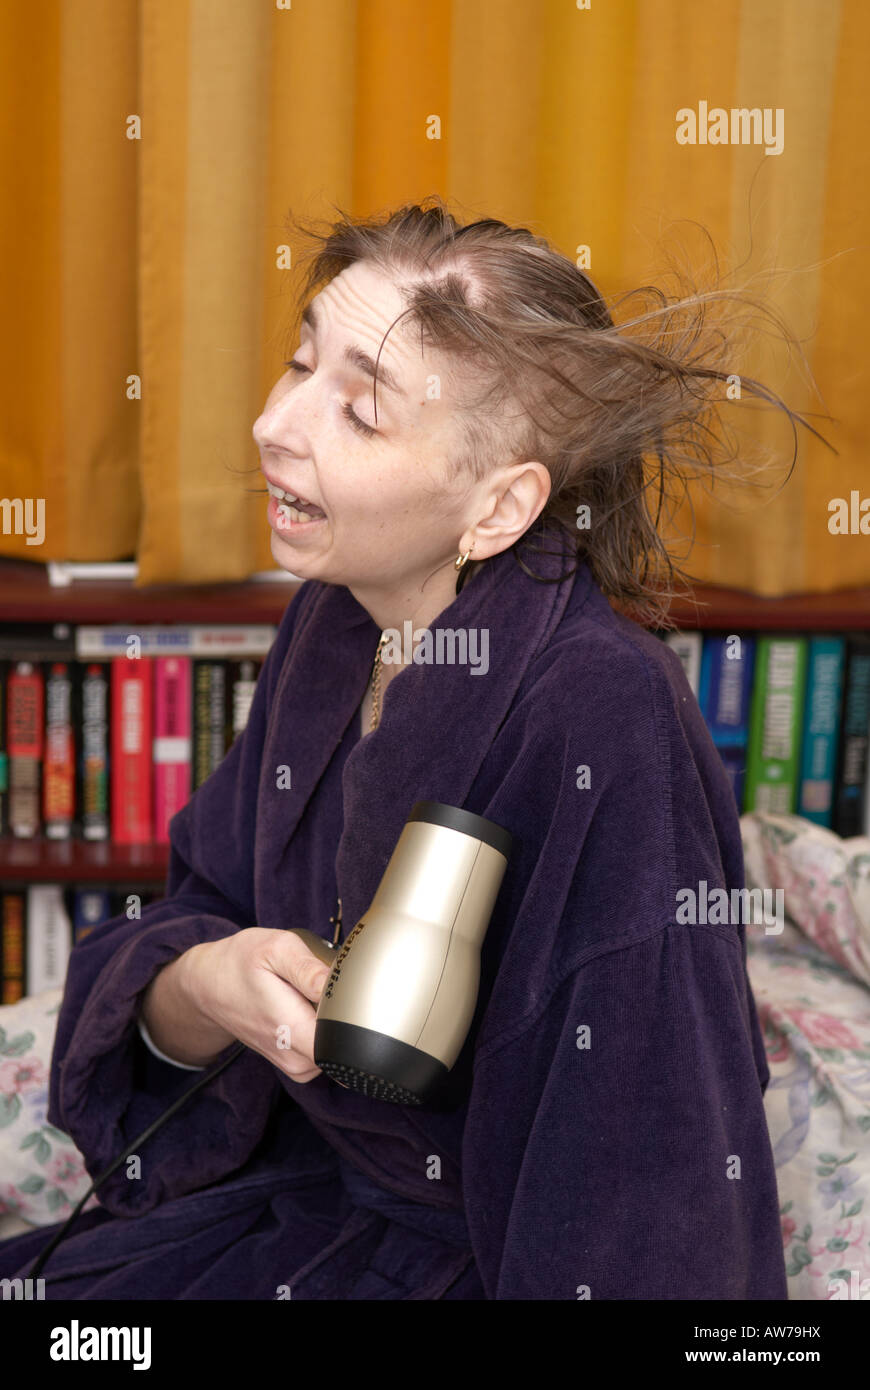 Lady amüsiert sich in ihrem Schlafzimmer Föhnen ihre Haare die aufgrund von Chemotherapie Ausdünnung Stockfoto